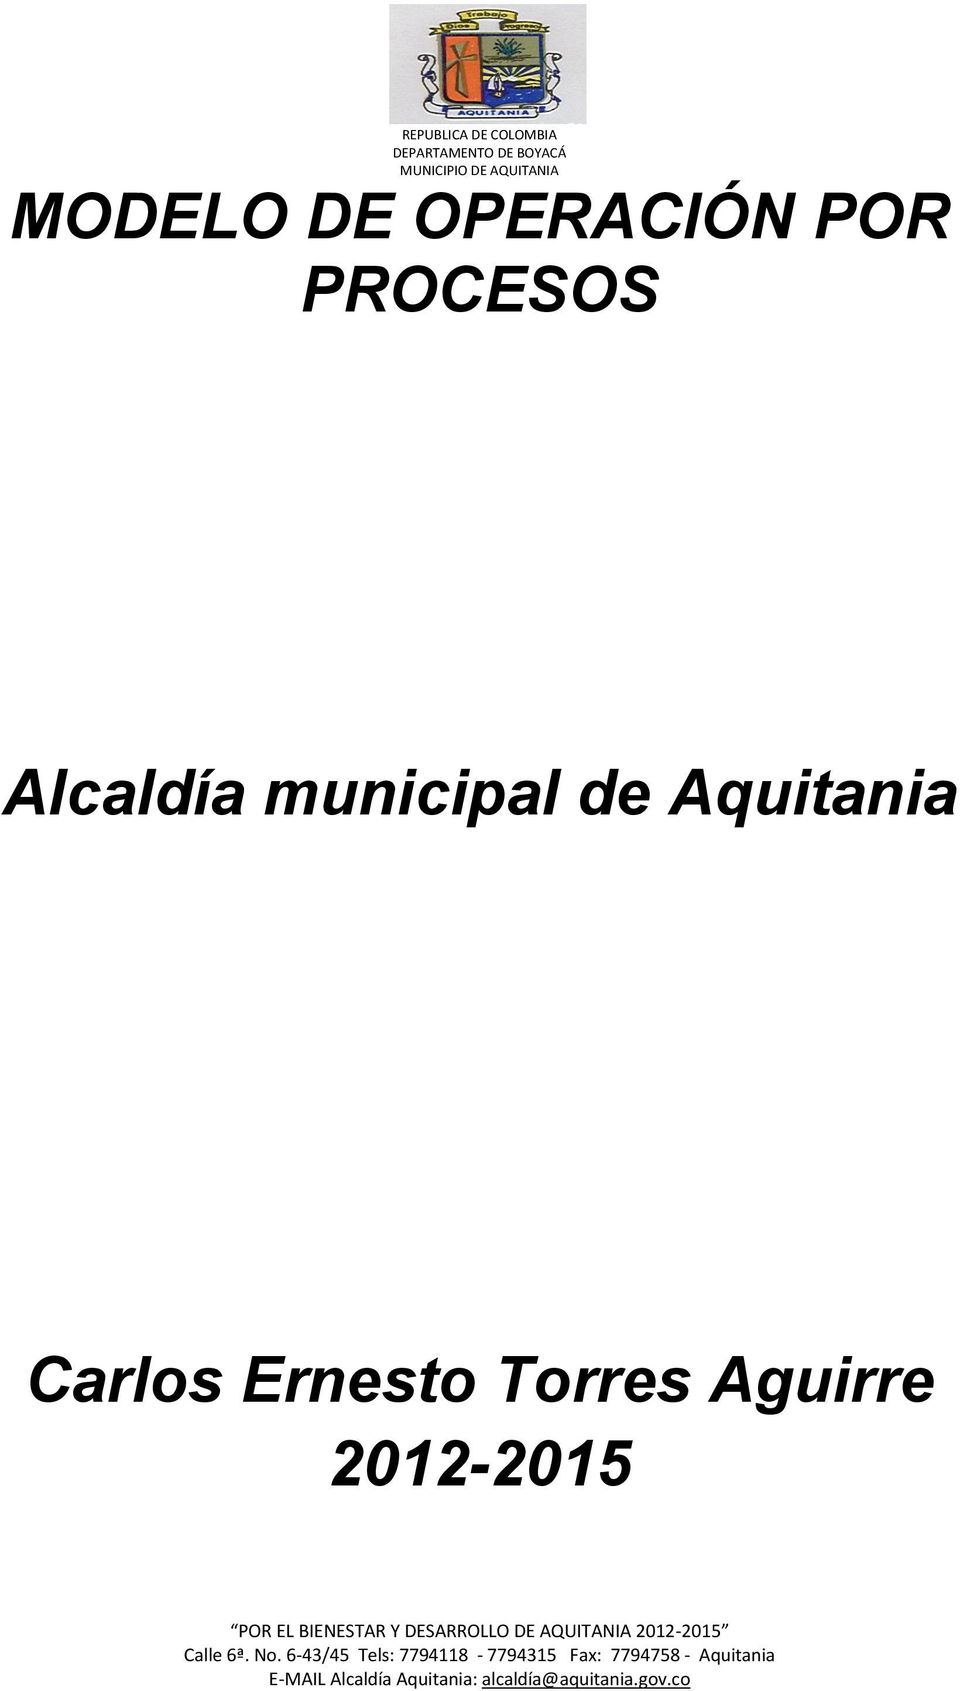 municipal de Aquitania